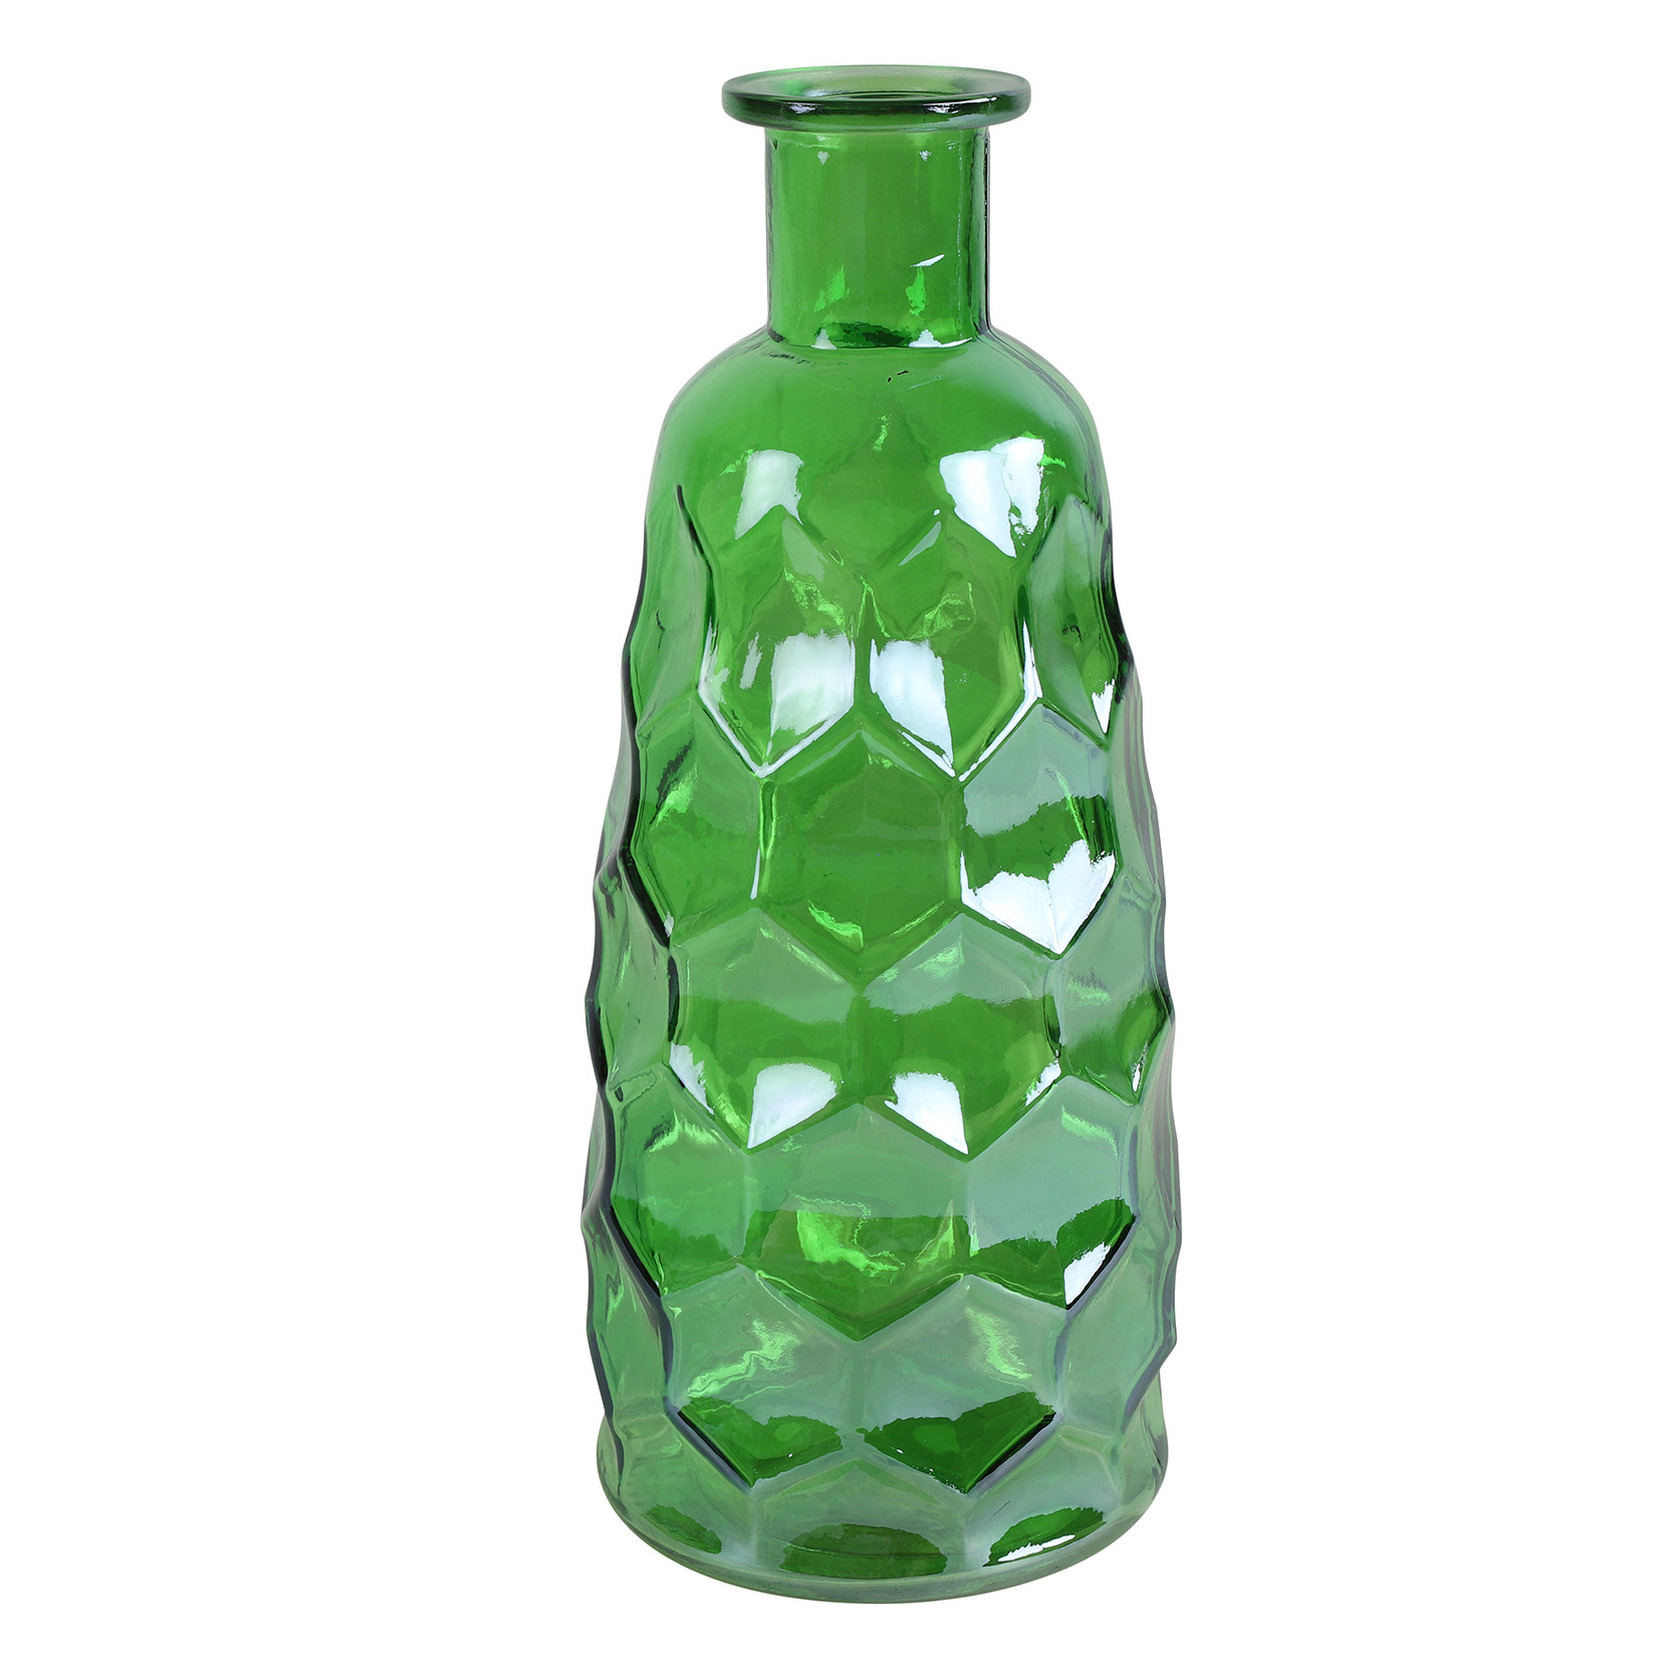 Countryfield Art Deco bloemenvaas groen transparant glas fles vorm D12 x H30 cm